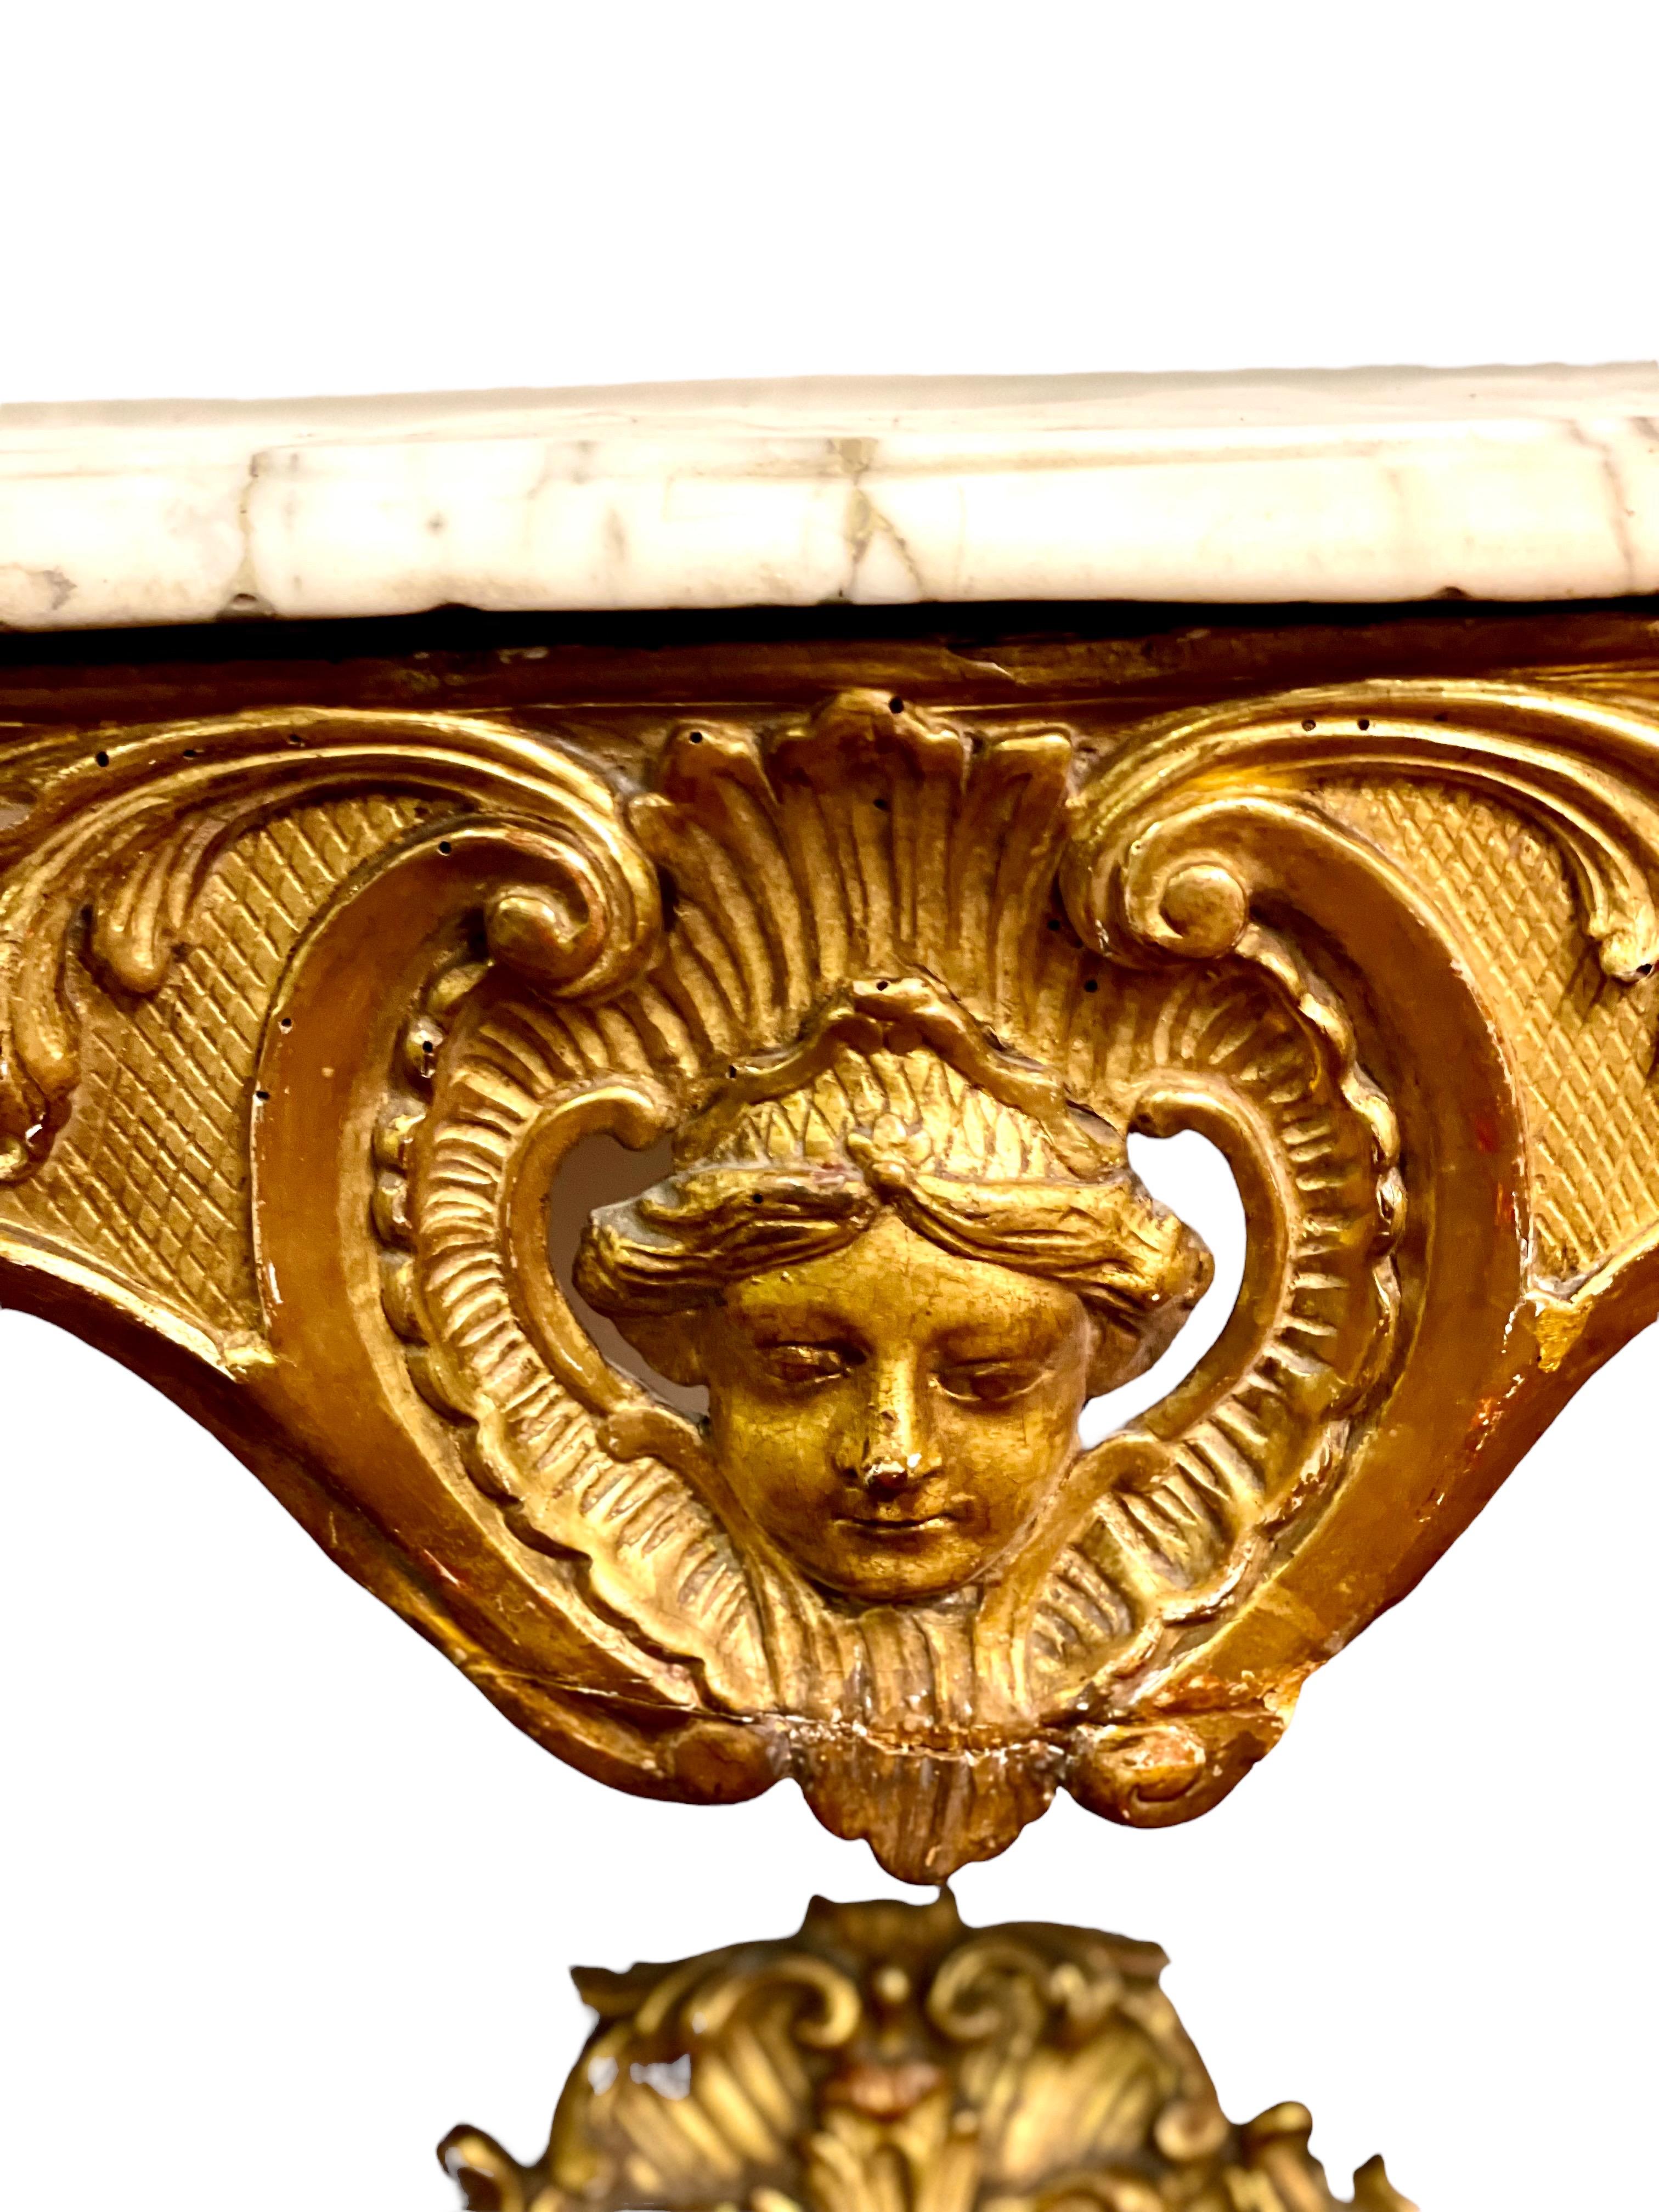 Dieser recht elegante und ungewöhnliche, kunstvoll geschnitzte Konsolentisch aus vergoldetem Holz im Stil von Louis XV verfügt über zwei gewölbte Beine, die durch einen durchbrochenen Querbalken verbunden sind, der mit Muschel- und Laubmotiven